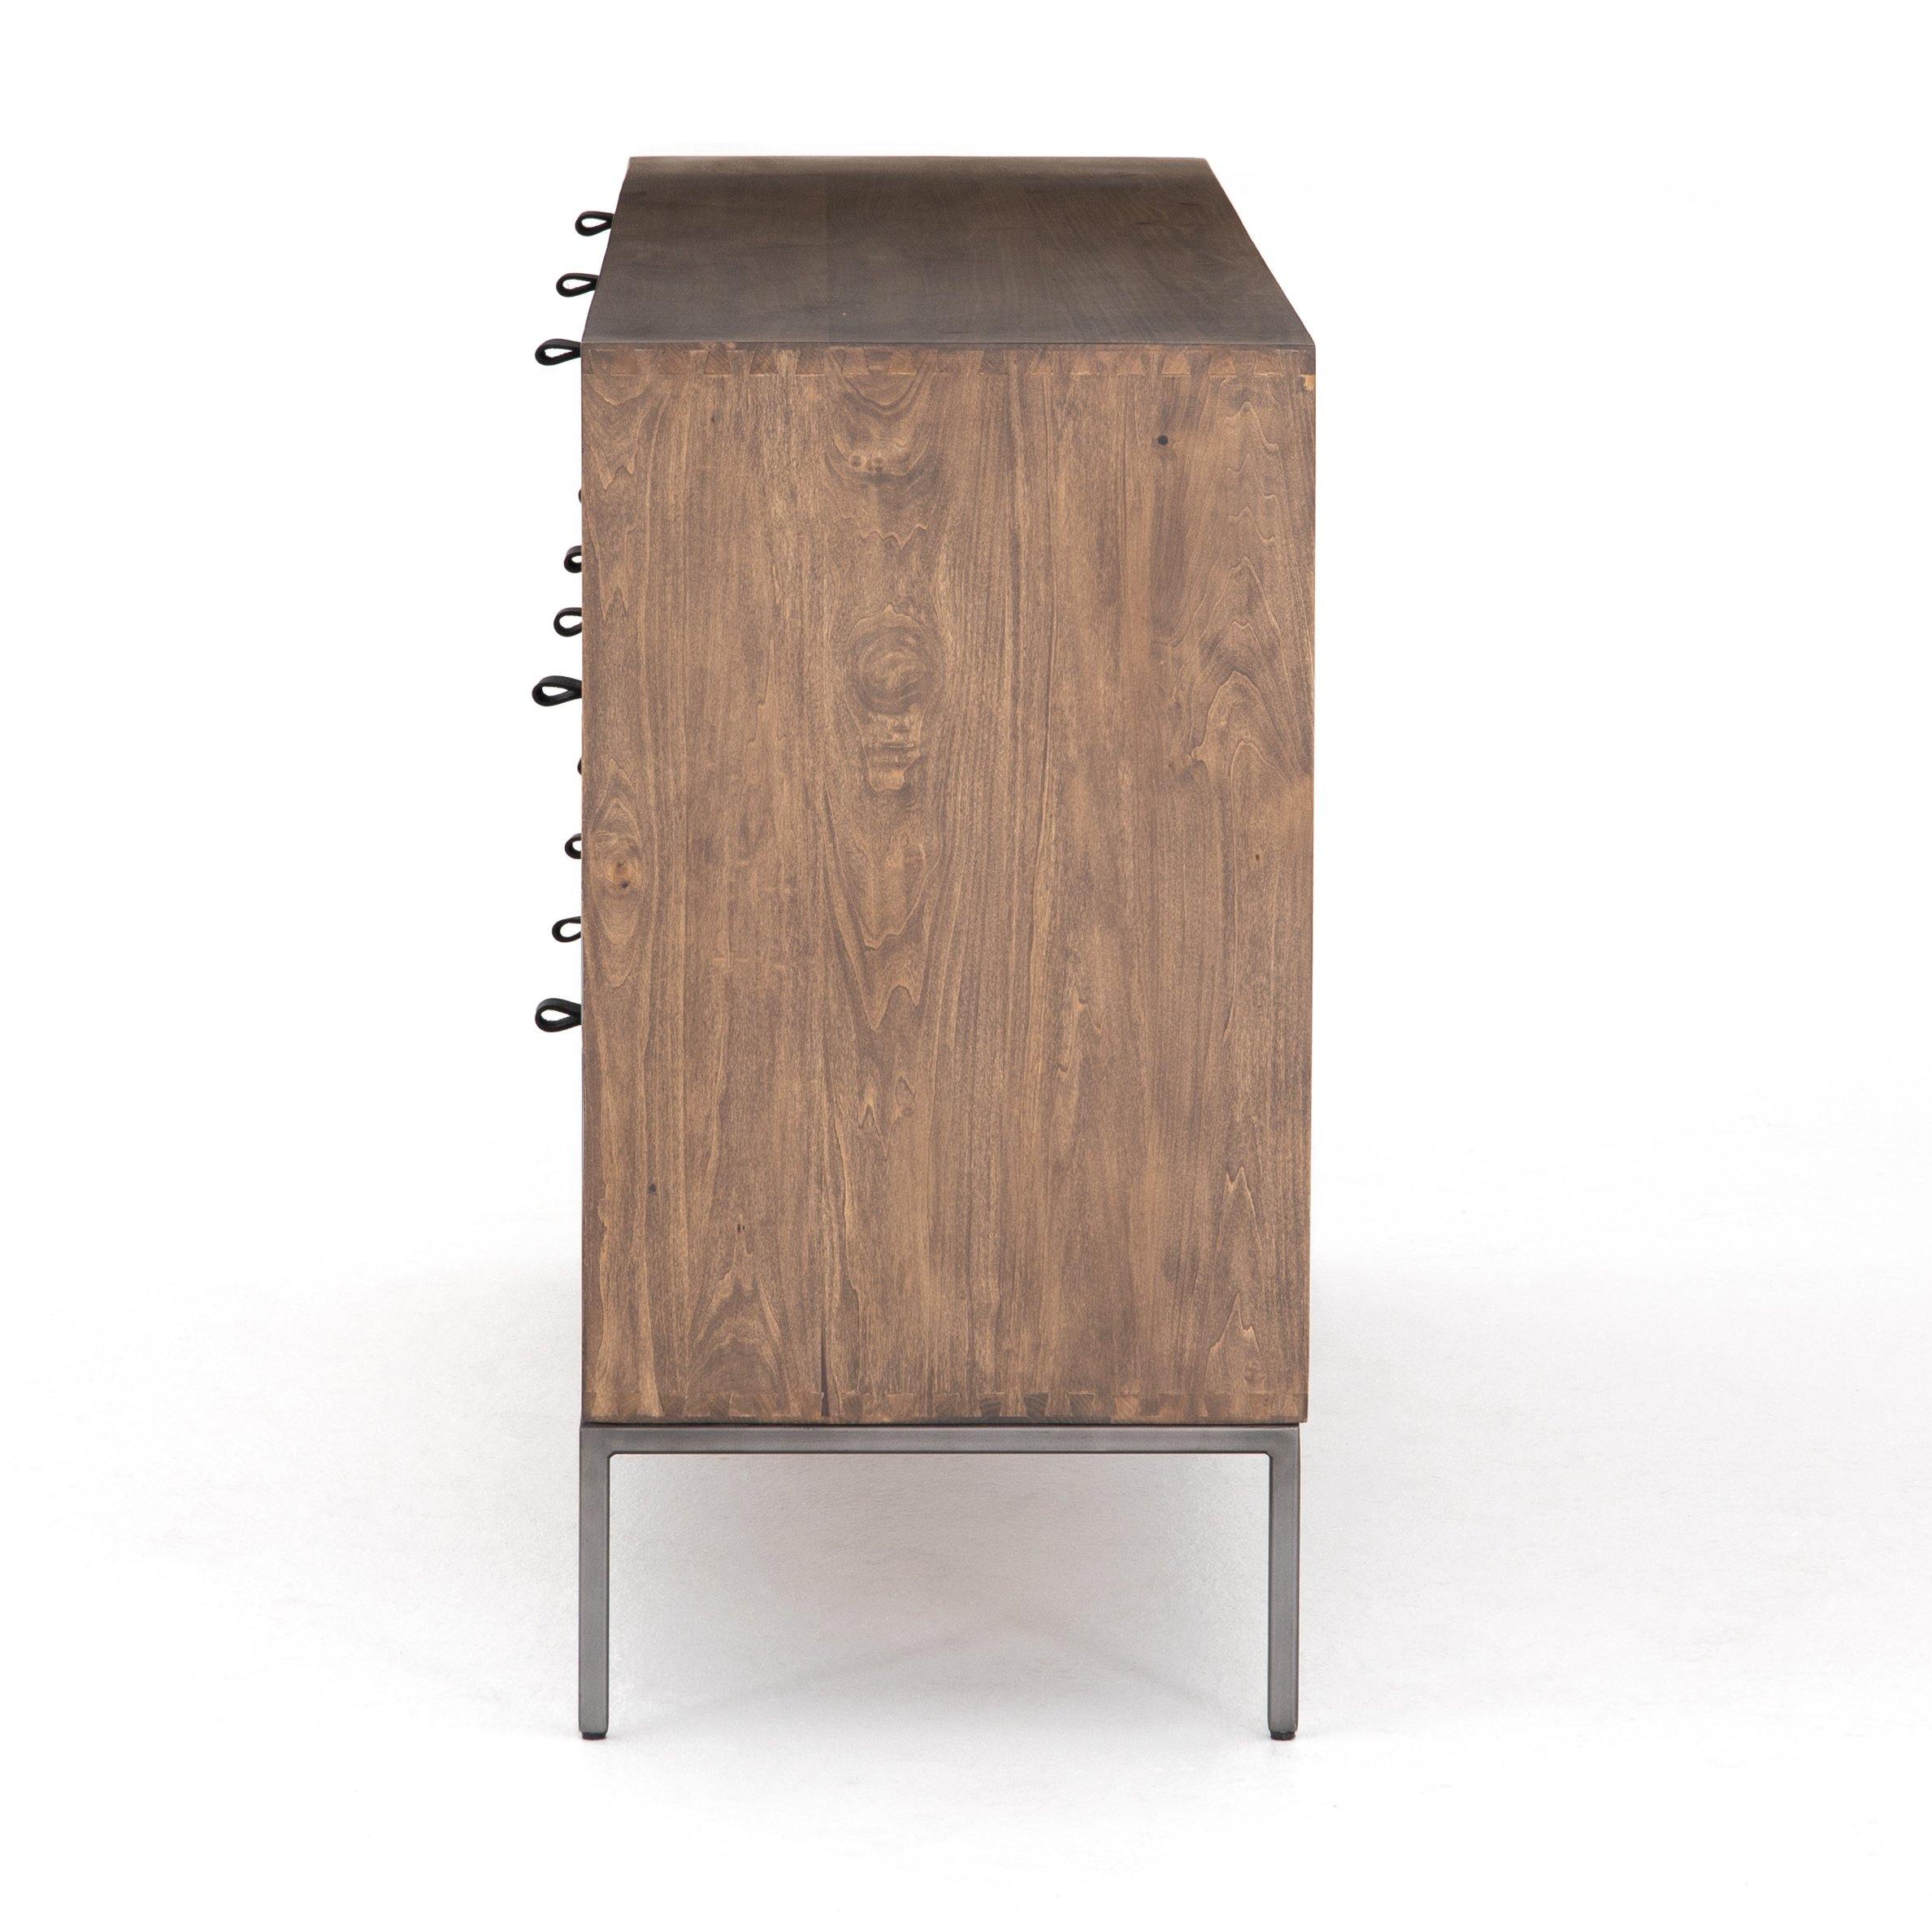 Trey 7 Drawer Dresser - Reimagine Designs - Dresser